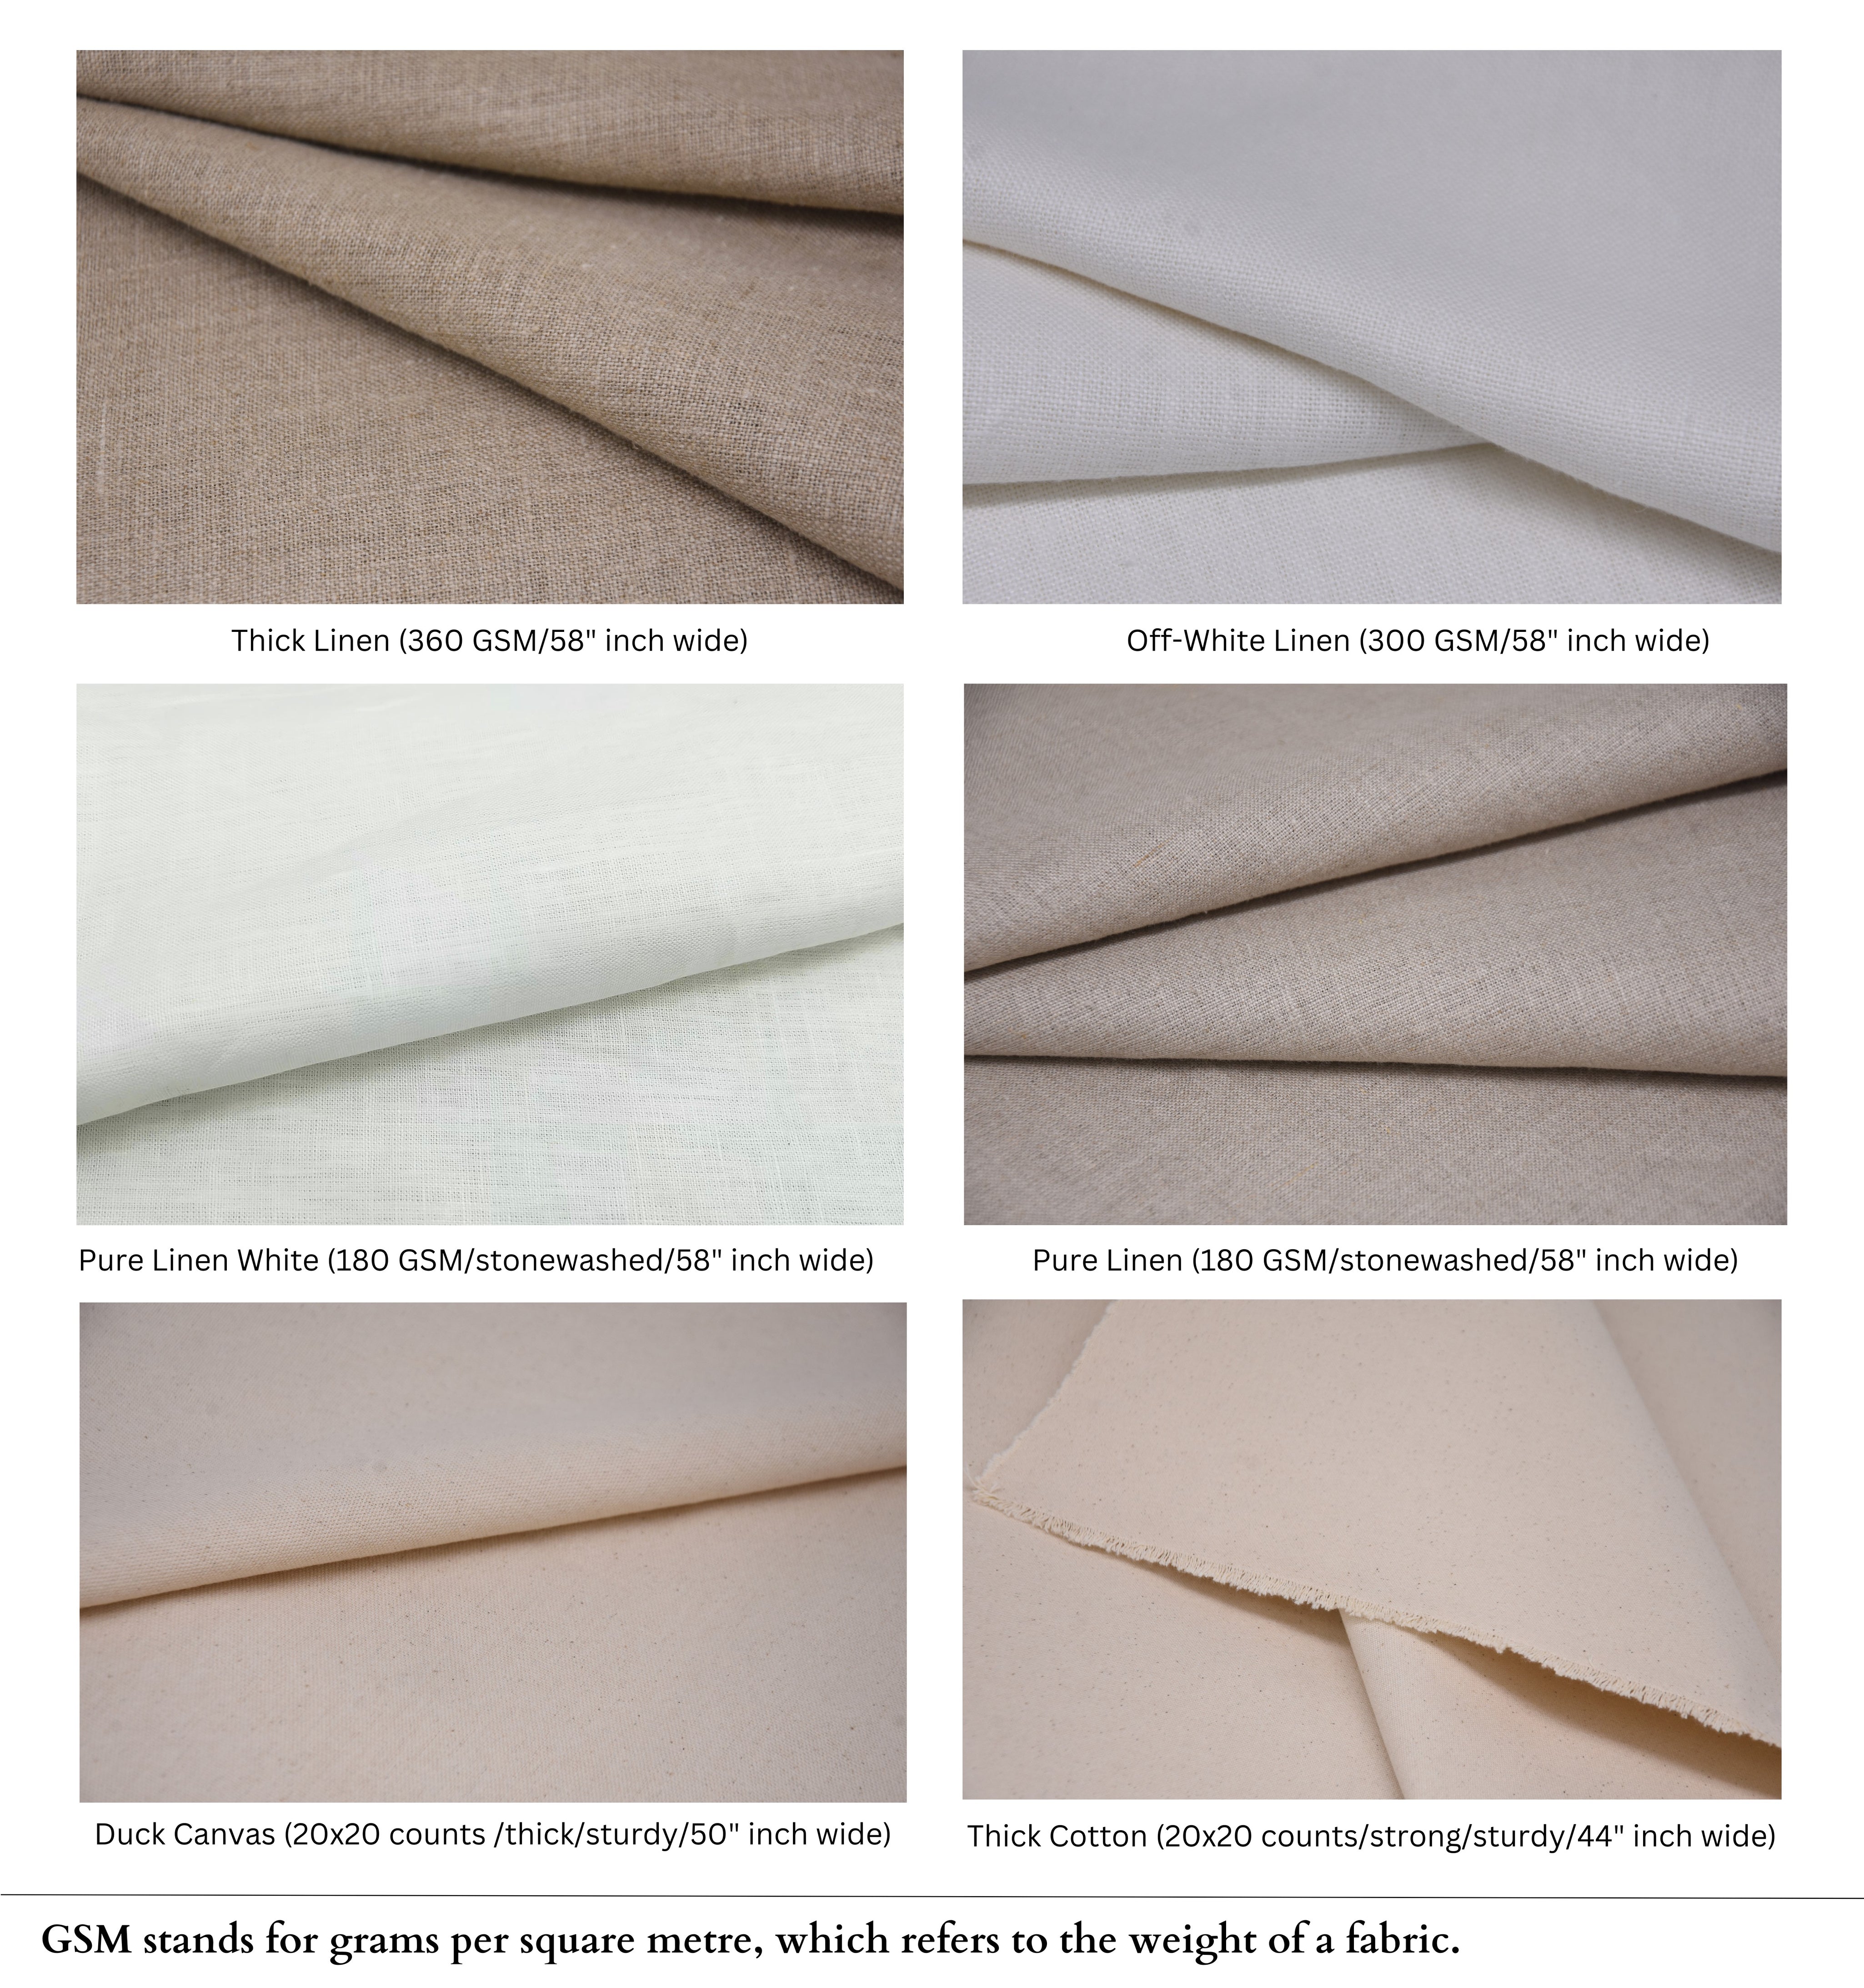 Block Print Linen Fabric, Keri Jaal Handloom Linenhandblocked,Handstamped,Handmade Block Print Fabric, Heavy Linen Block Print Trending For Gift,Home Decors